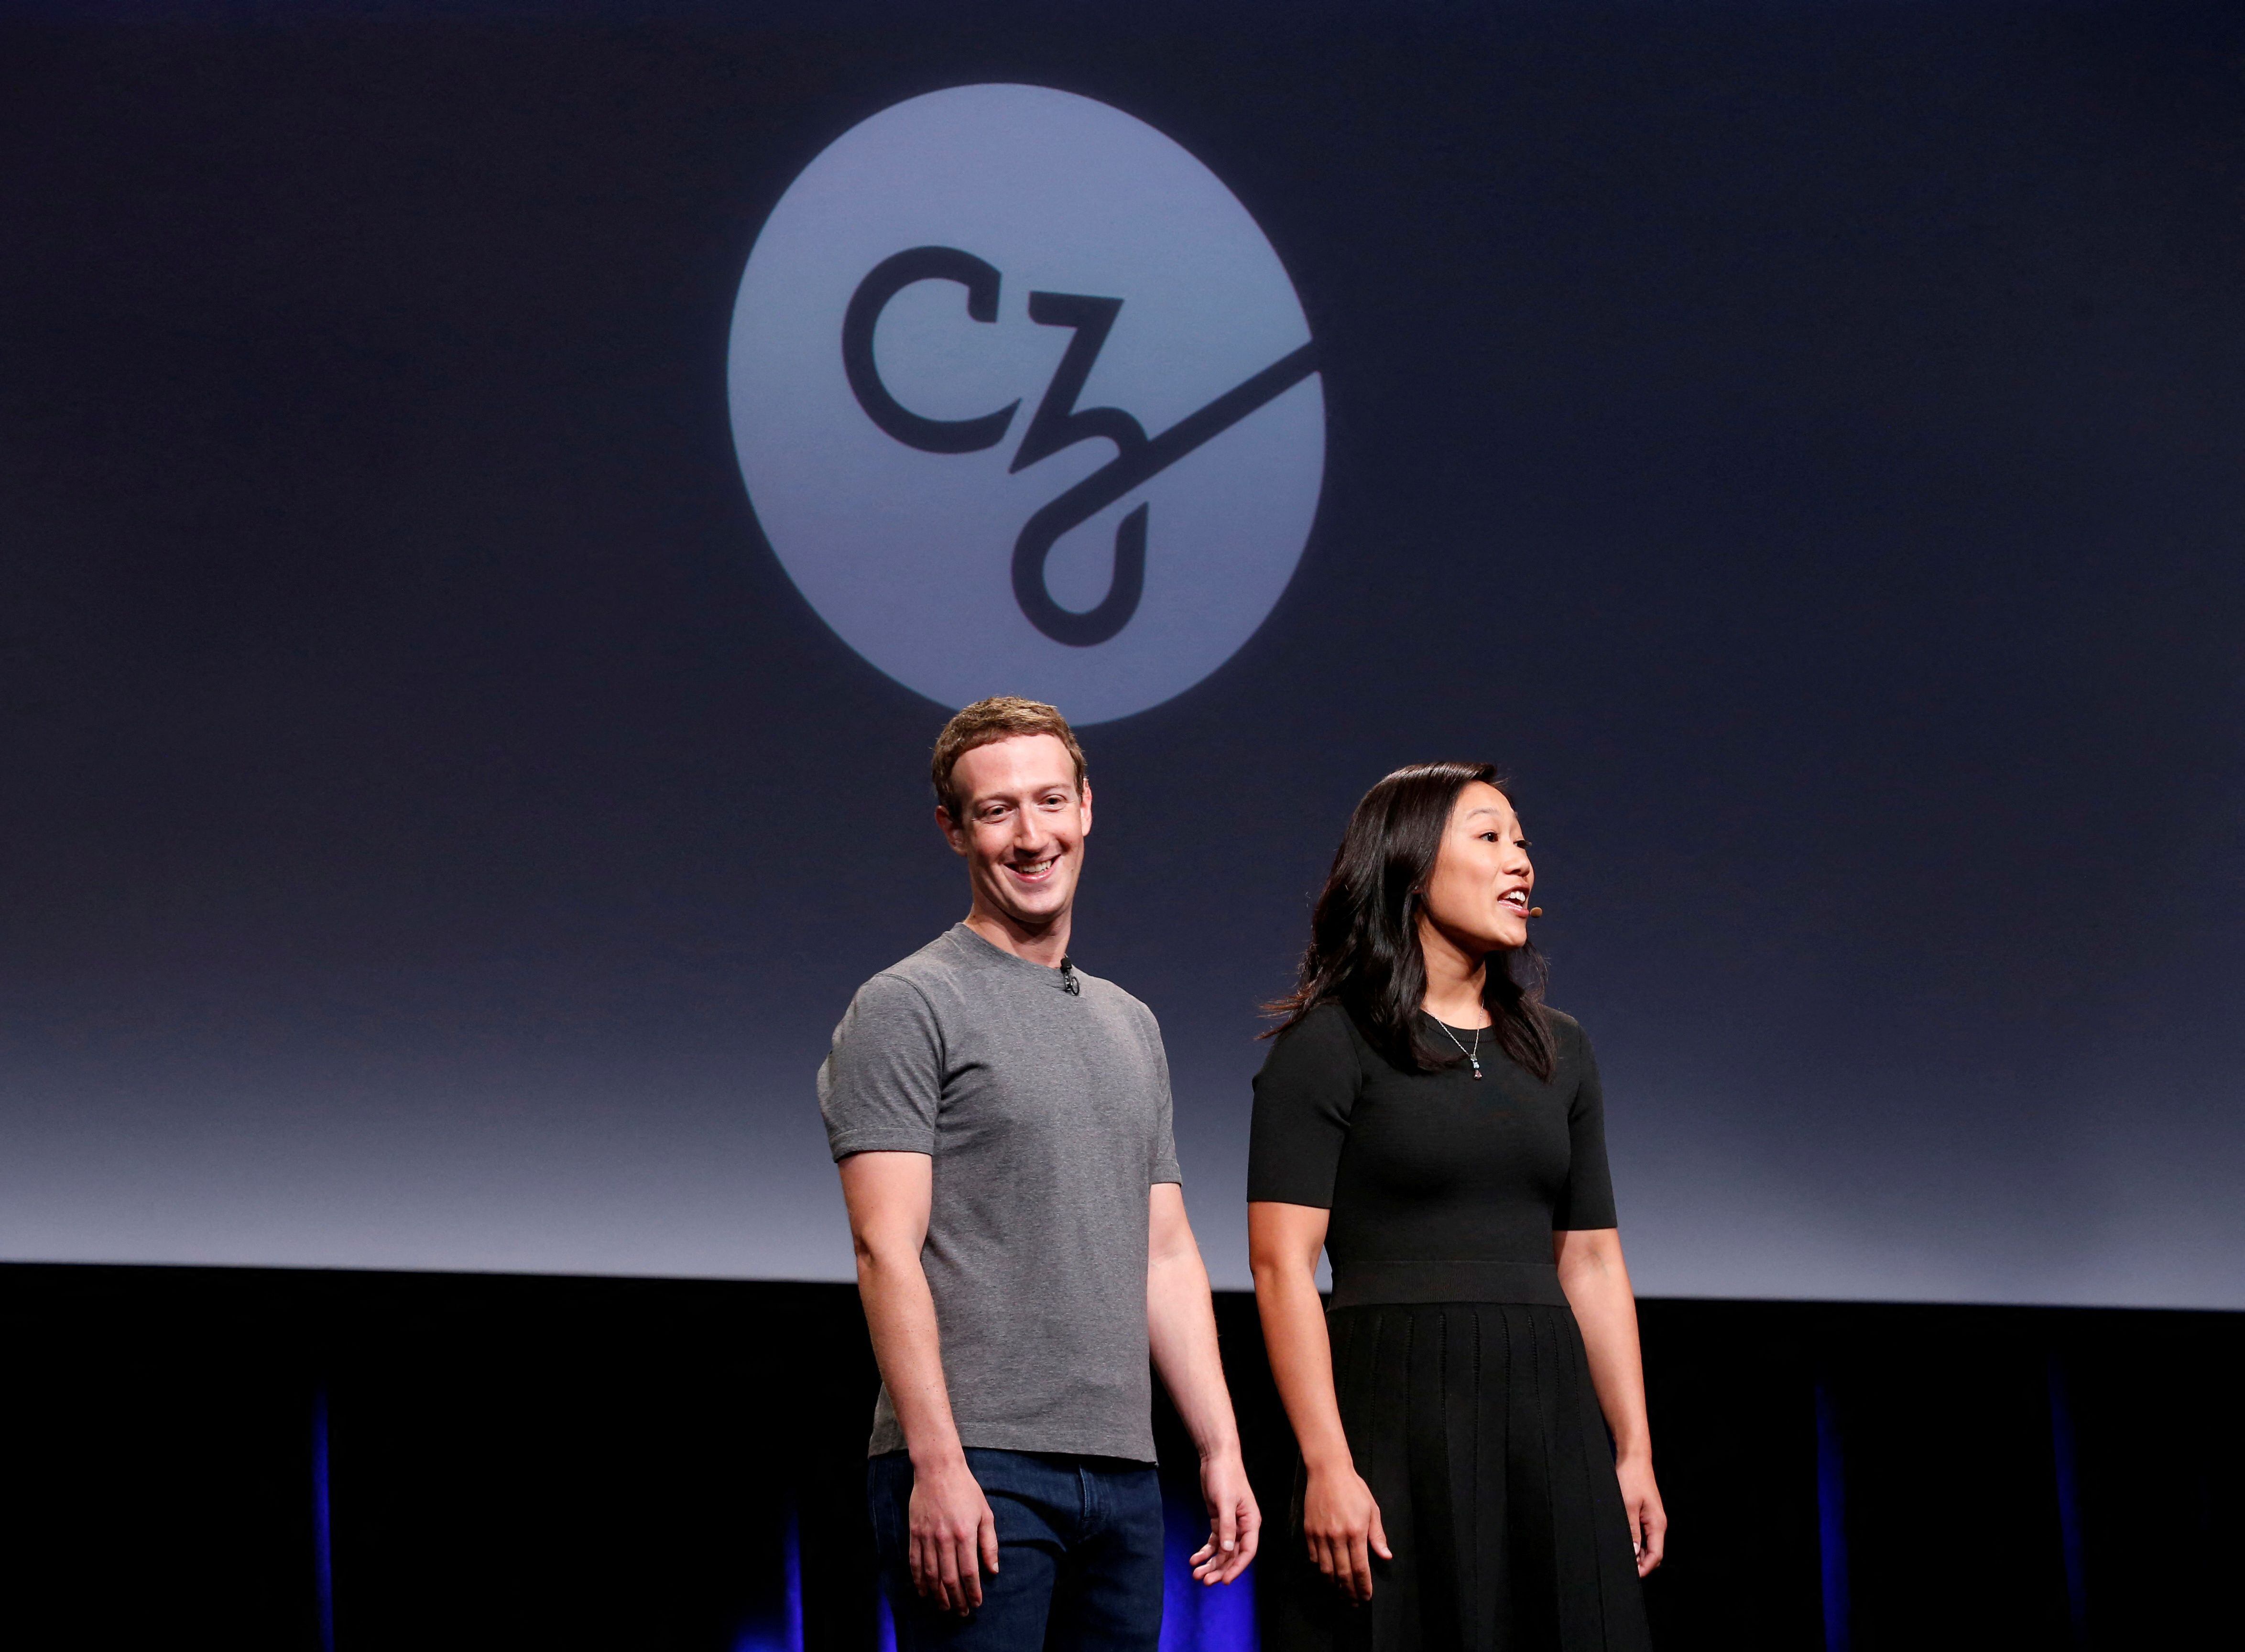 Zuckerberg, este se ha caracterizado por generalmente usar una camiseta gris cuando está en público. (REUTERS/Beck Diefenbach)